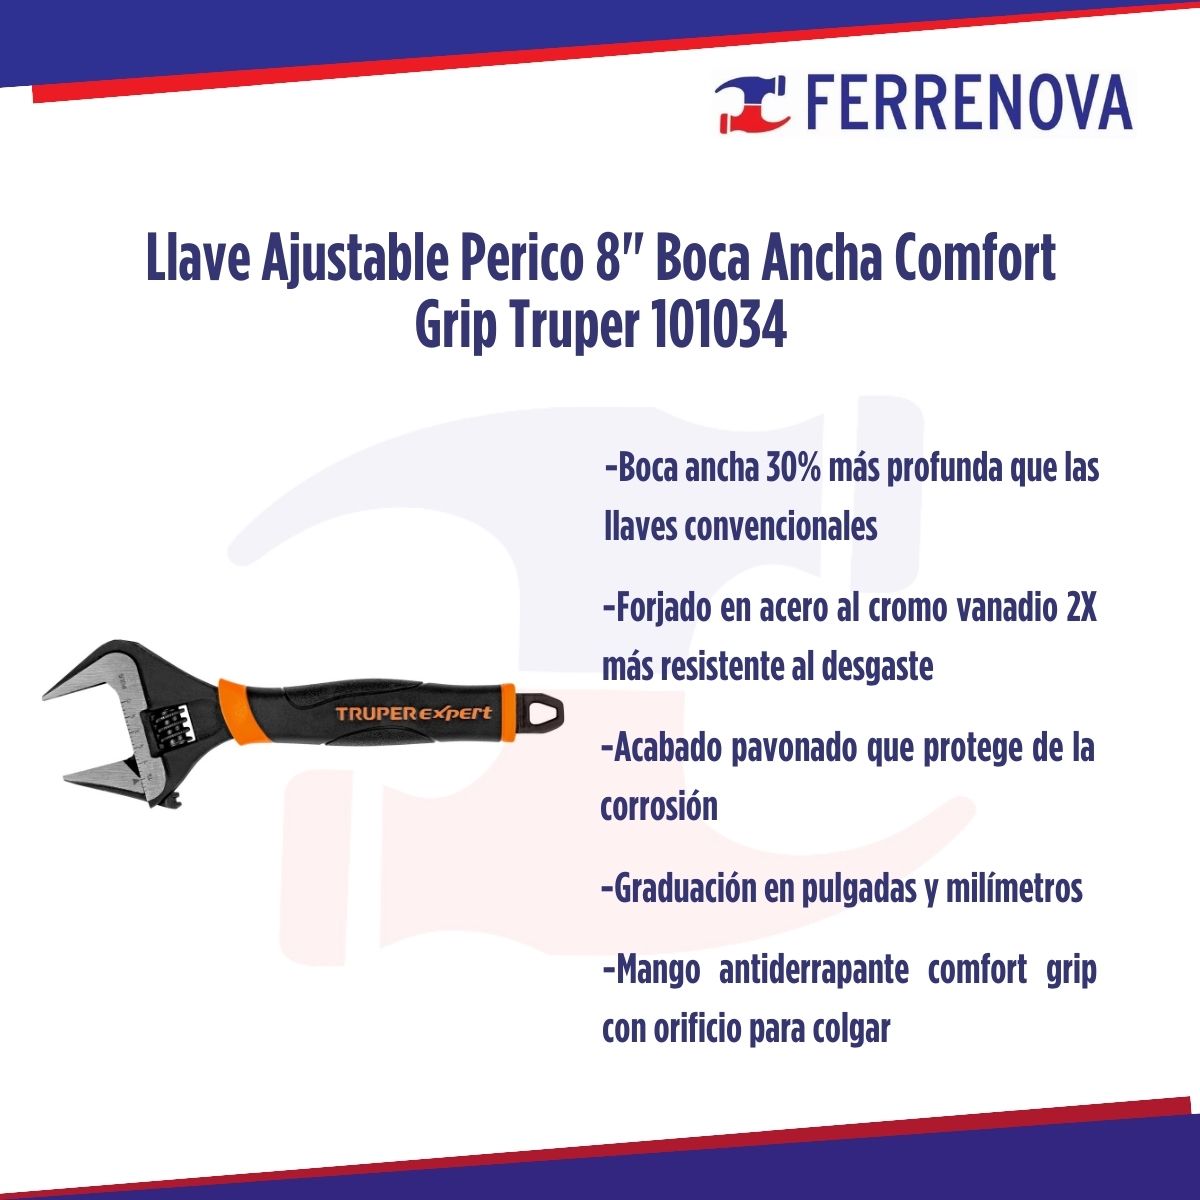 Llave Ajustable Perico 8" Boca Ancha Comfort Grip Truper 101034